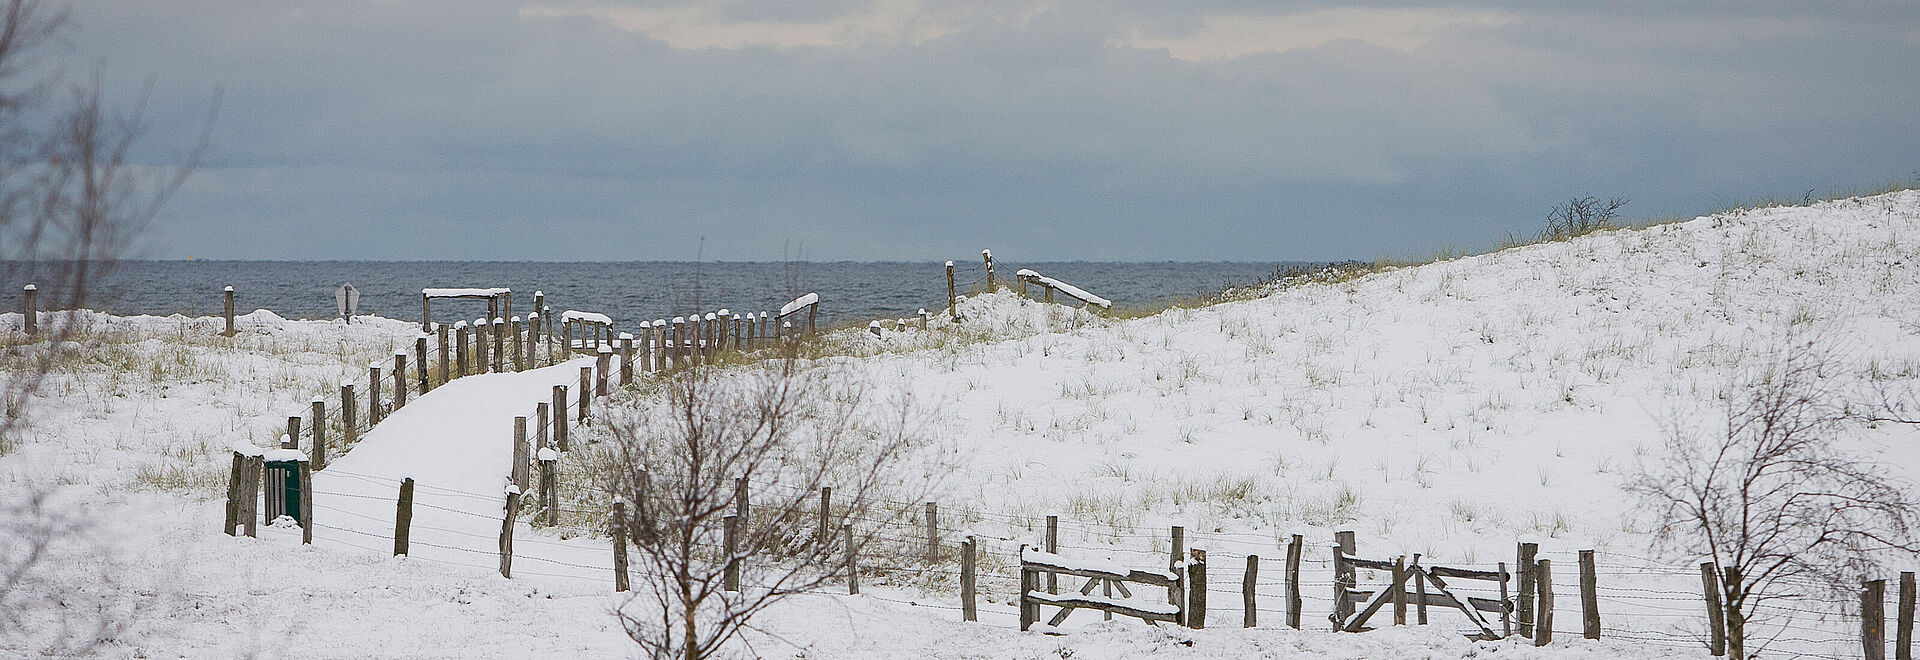 Weissenhäuser Strand Winterurlaub an der Ostsee